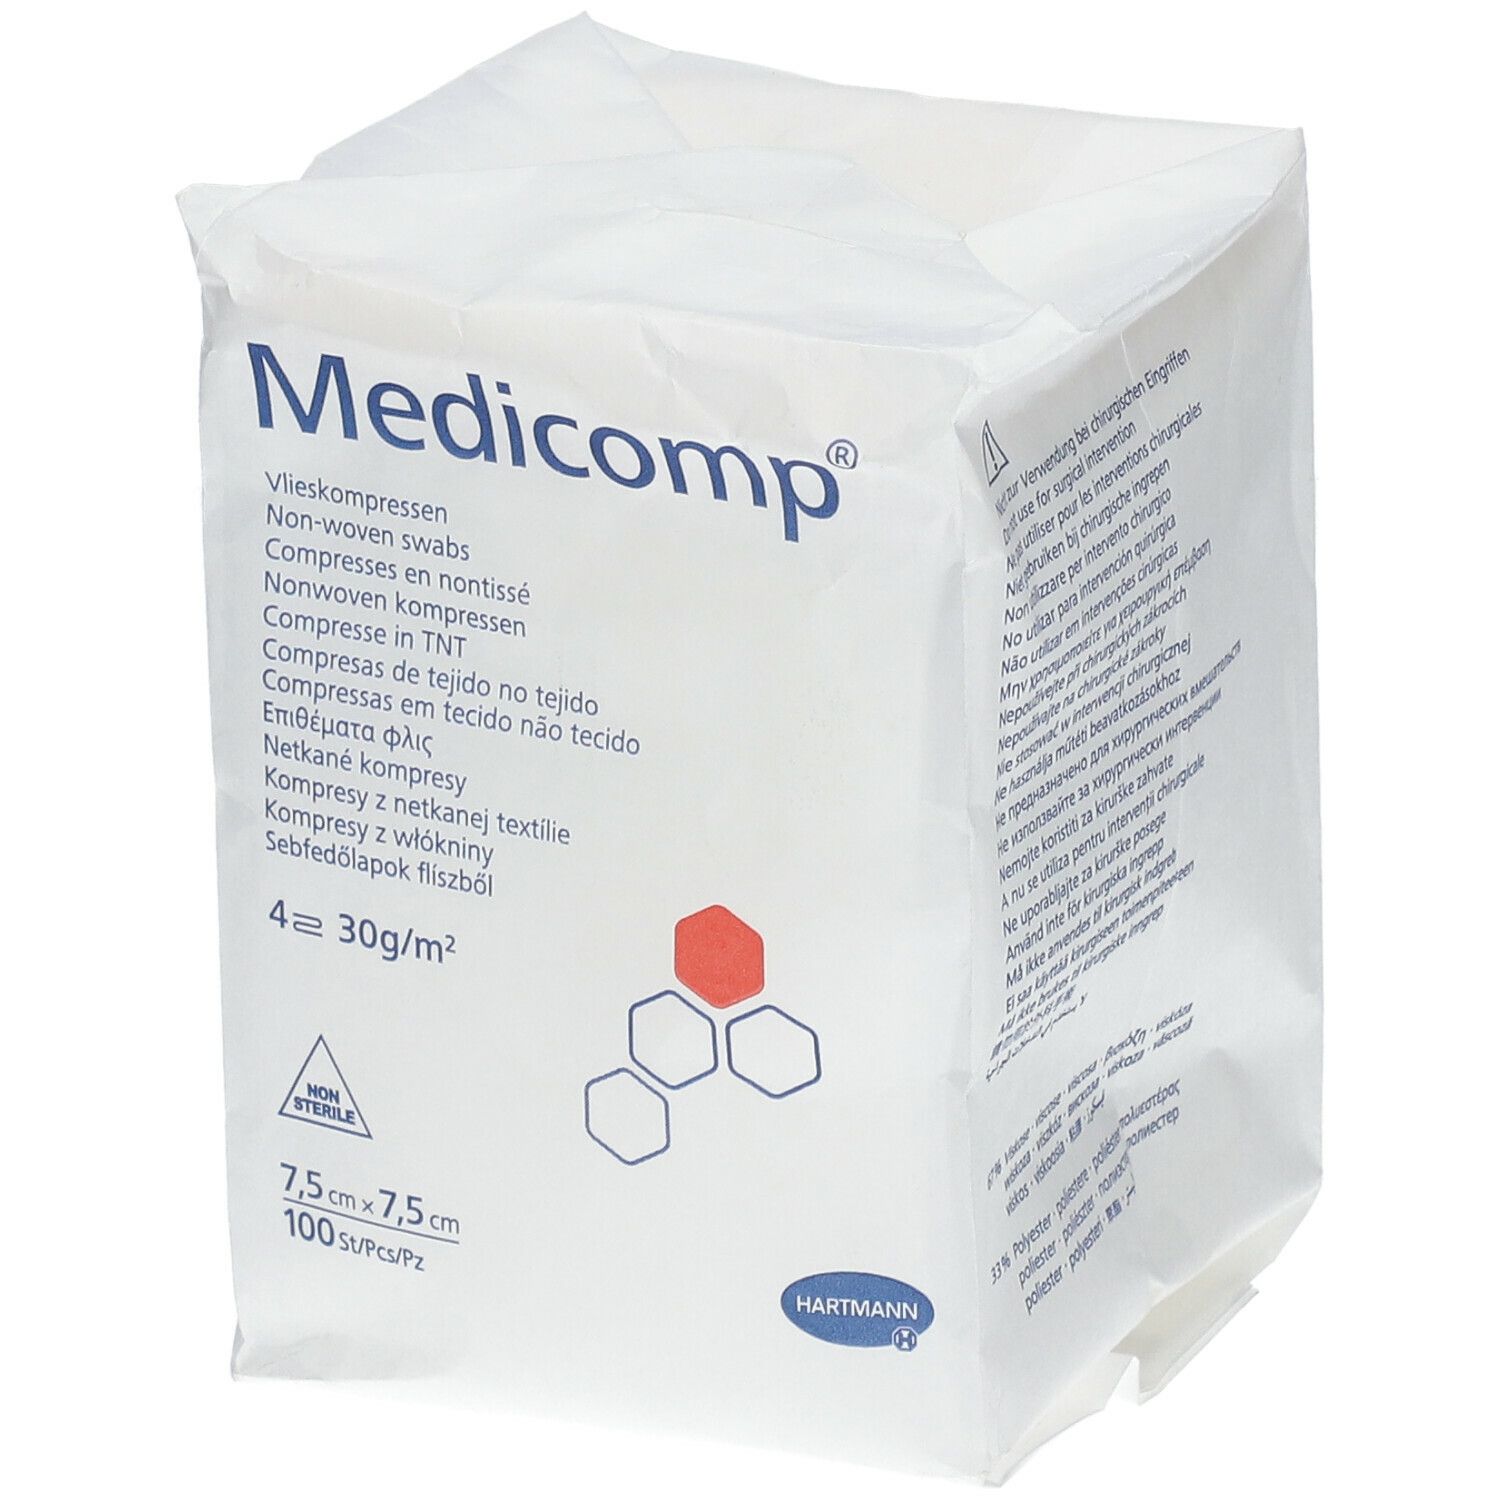 Medicomp® Komprressen unsteril 7,5 cm x 7,5 cm